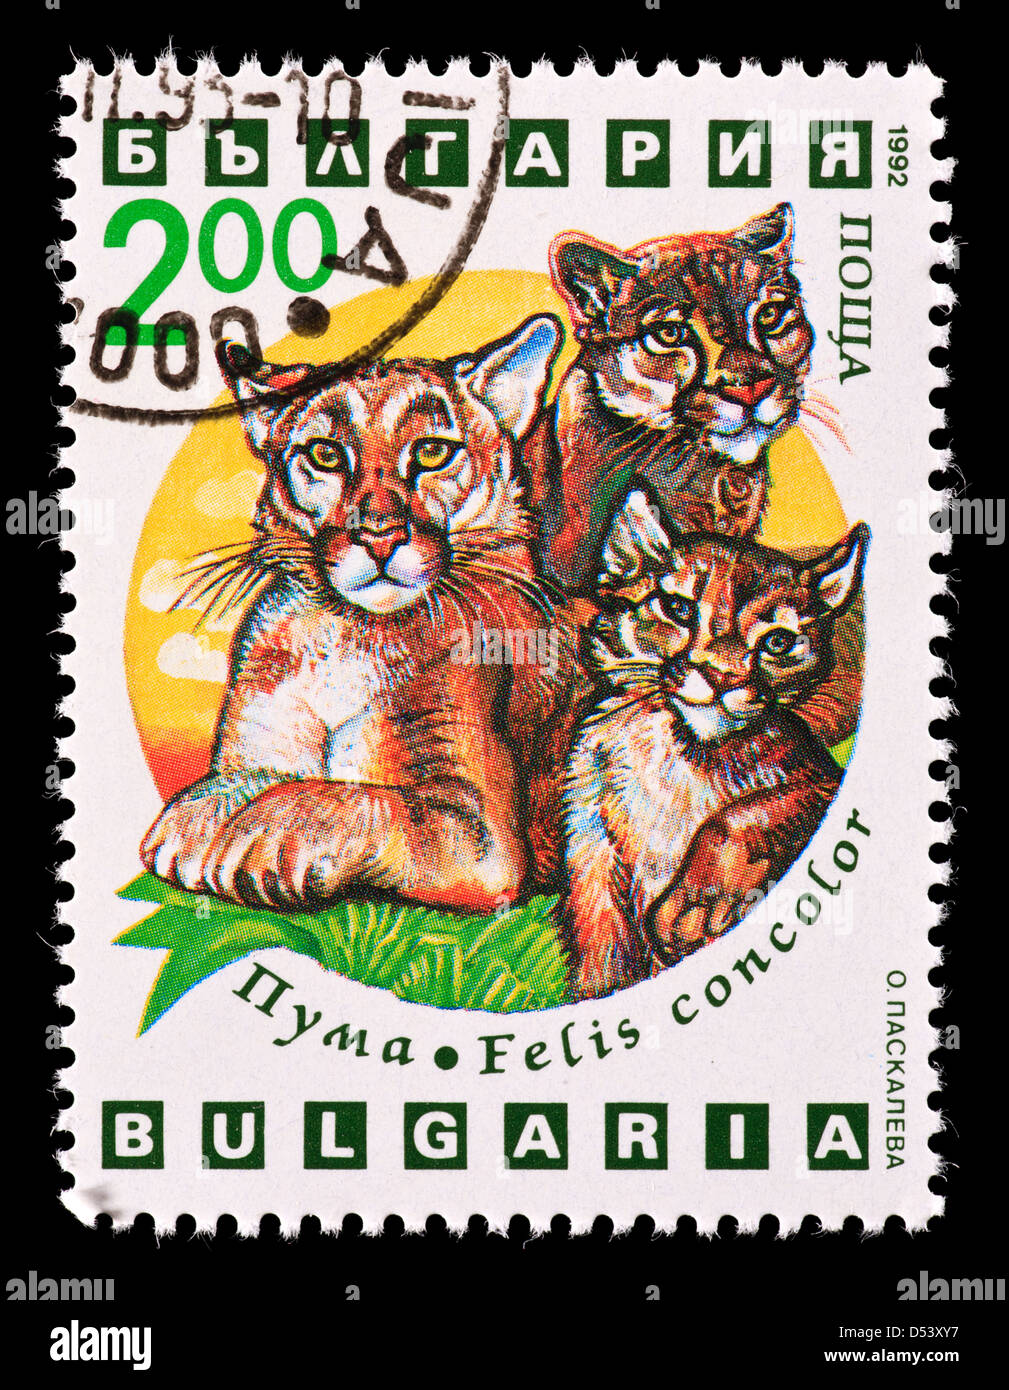 Timbre-poste de la Bulgarie représentant une mère cougar avec de jeunes (Felis concolor) Banque D'Images